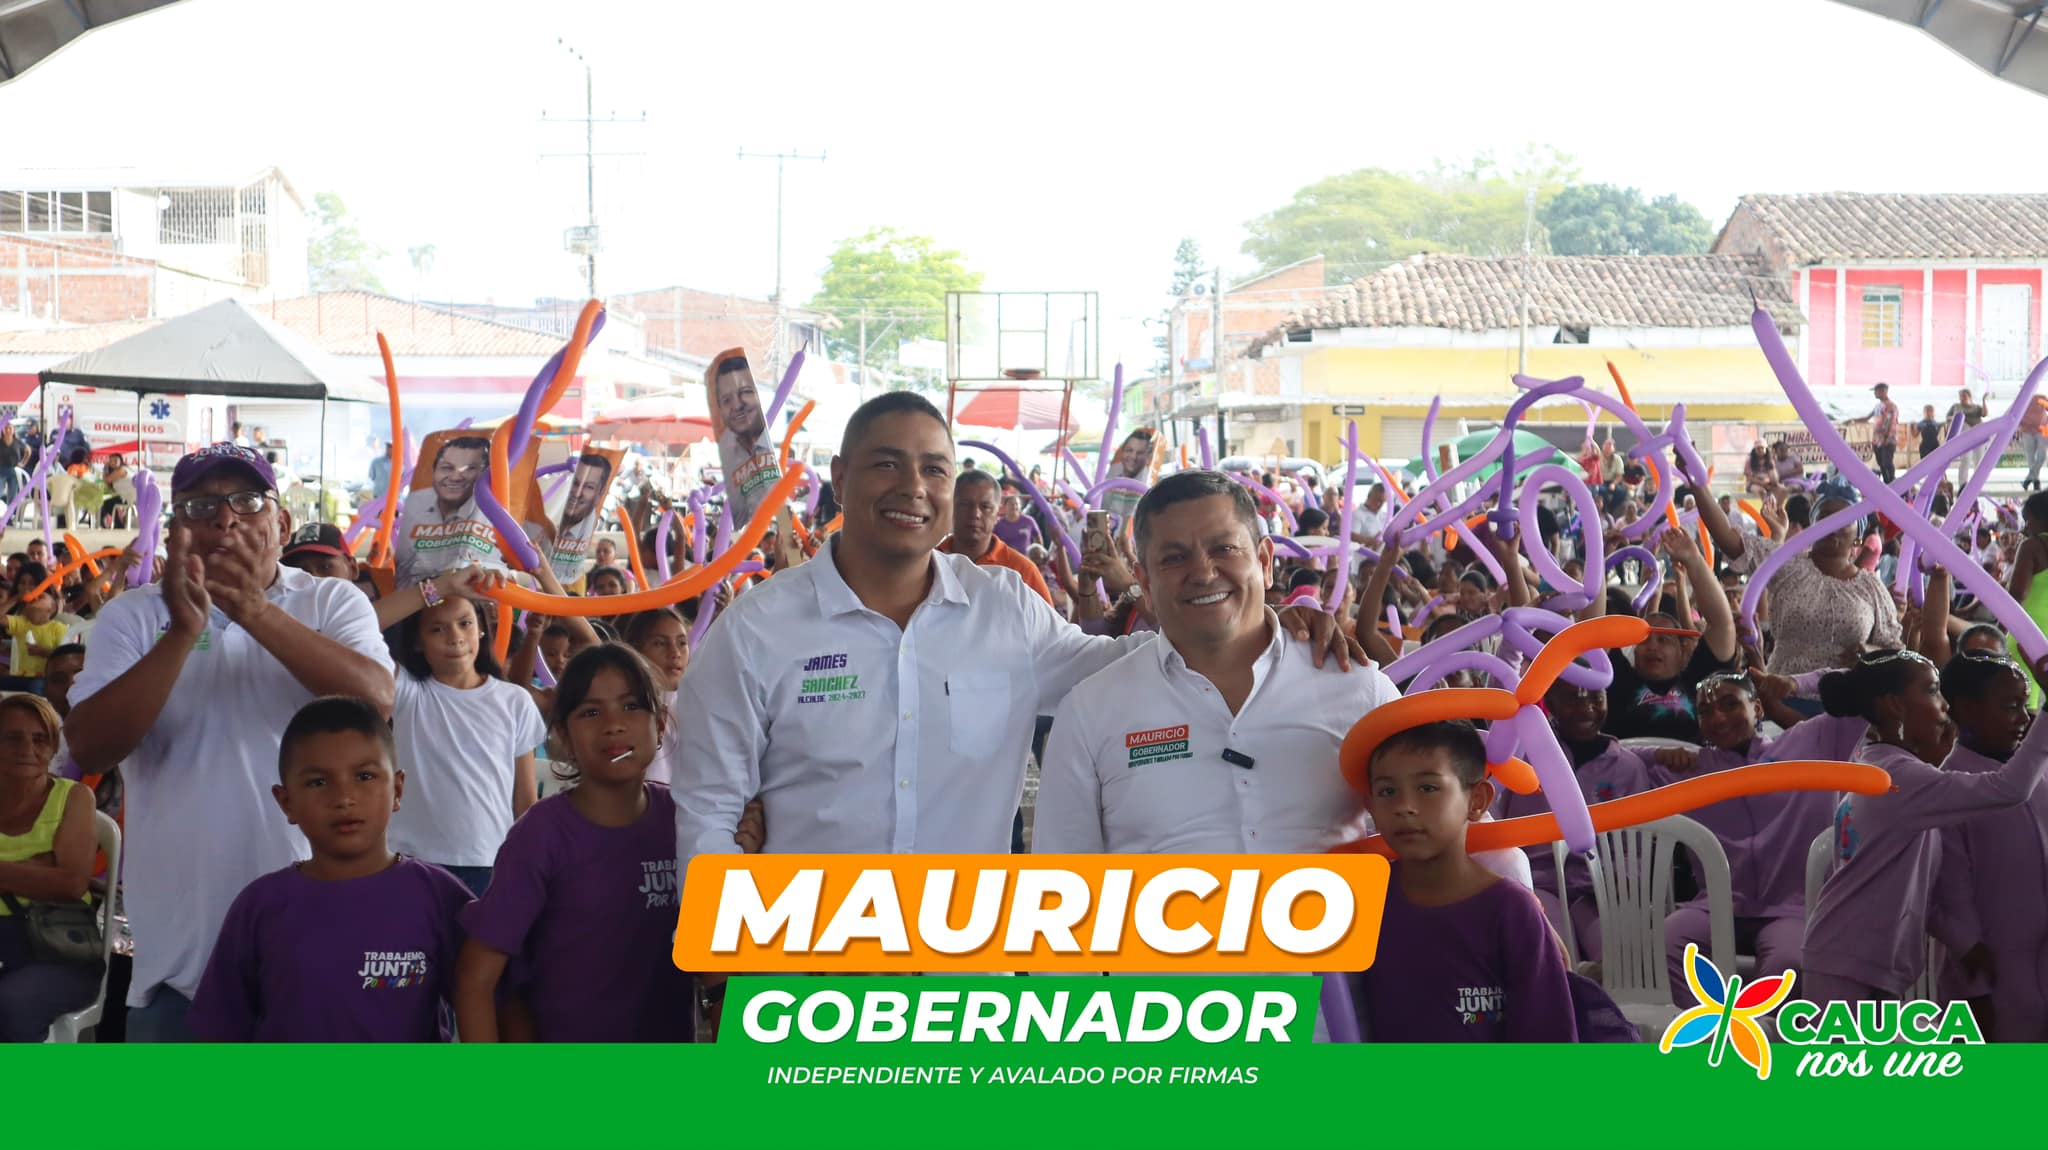 El líder que el Cauca necesita: Mauricio Muñoz, quien no solo representa a un grupo étnico o político, sino que lidera la transformación para todos